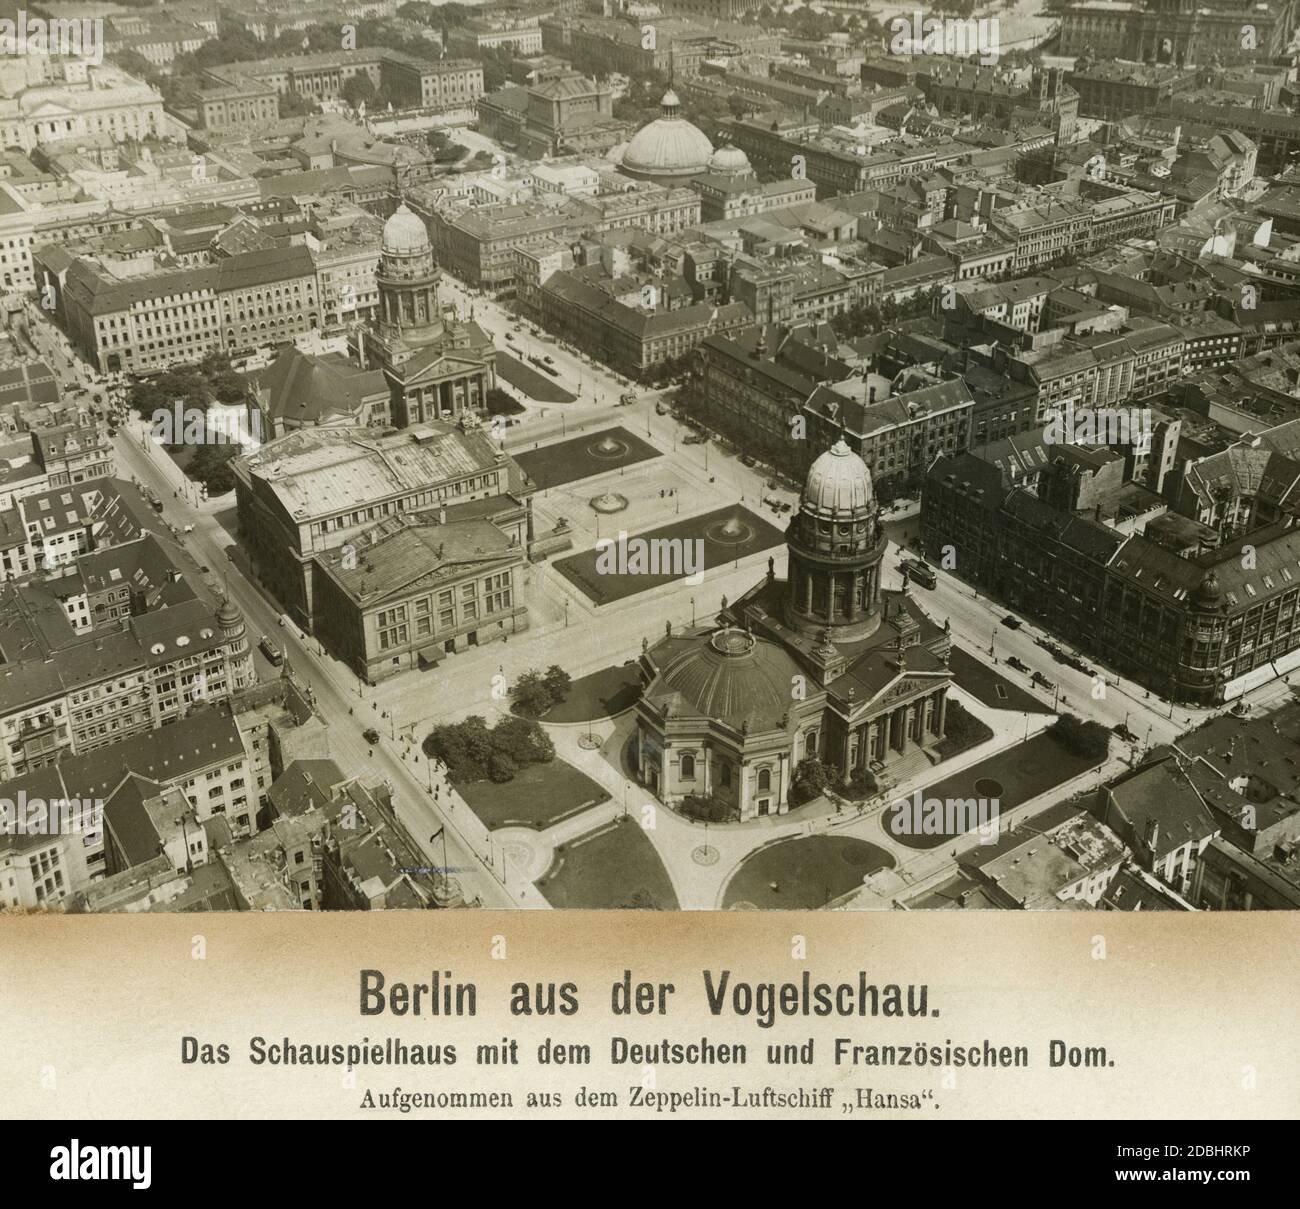 'L'immagine mostra le cattedrali francese e tedesca e la Schauspielhaus am Gendarmenmarkt di Berlino. La piazza è delimitata da Charlottenstrasse e Markgrafenstrasse, che intersecano Mohrenstrasse, Taubenstrasse, Jaegerstrasse, Franzoesische Strasse, Behrenstrasse e, sullo sfondo, il magnifico viale Unter den Linden. L'Università di Humboldt e la Cattedrale di San Hedwig a Bebelplatz si trovano anche in questa zona. La foto è stata ripresa dalla Zeppelin LZ 13 ''Hansa''. Foto Stock